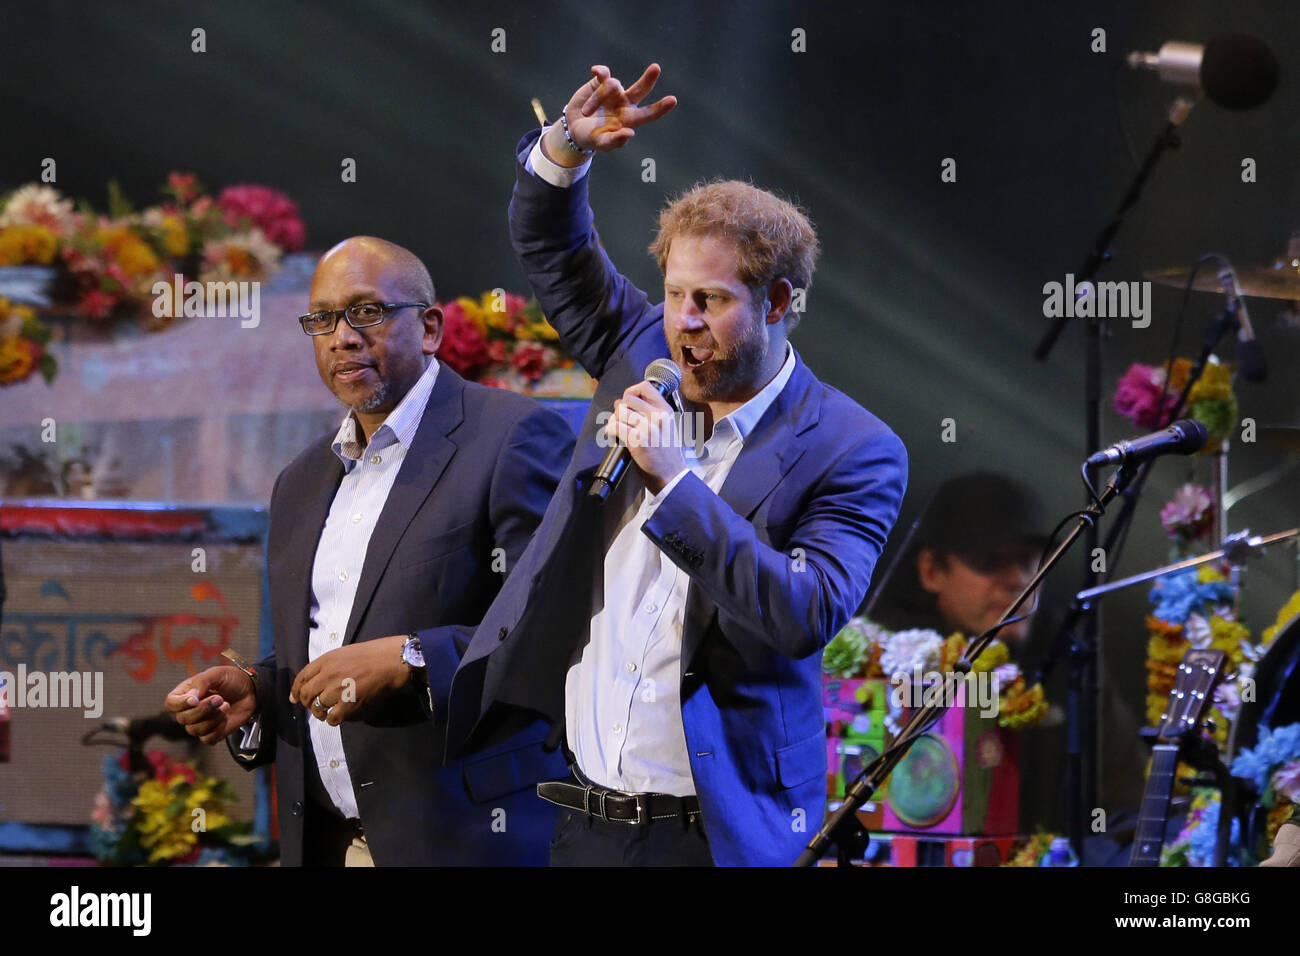 Il principe Harry (destra) con carità Sentebale co-fondatore il Principe Seeiso di Lesotho sul palco durante un concerto Sentebale in Kensington Palace Gardens, Londra, per aumentare la consapevolezza e i fondi per gli adolescenti che vivono con l HIV in Africa sub-sahariana. Foto Stock